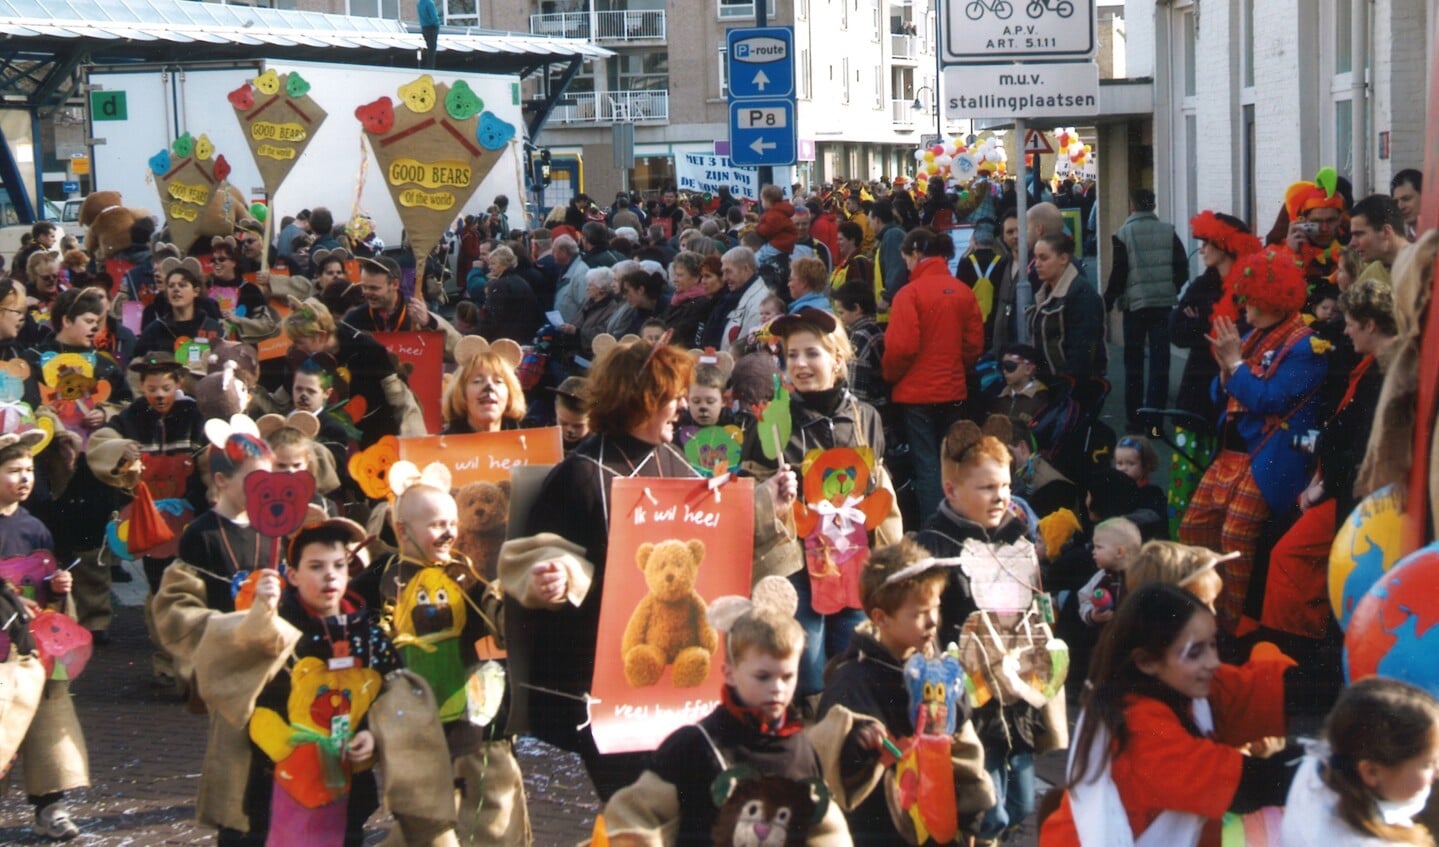 Samen met vele ouders actief tijdens de kindercarnavalsoptocht in Veghel, waarmee vele prijzen zijn gewonnen. 